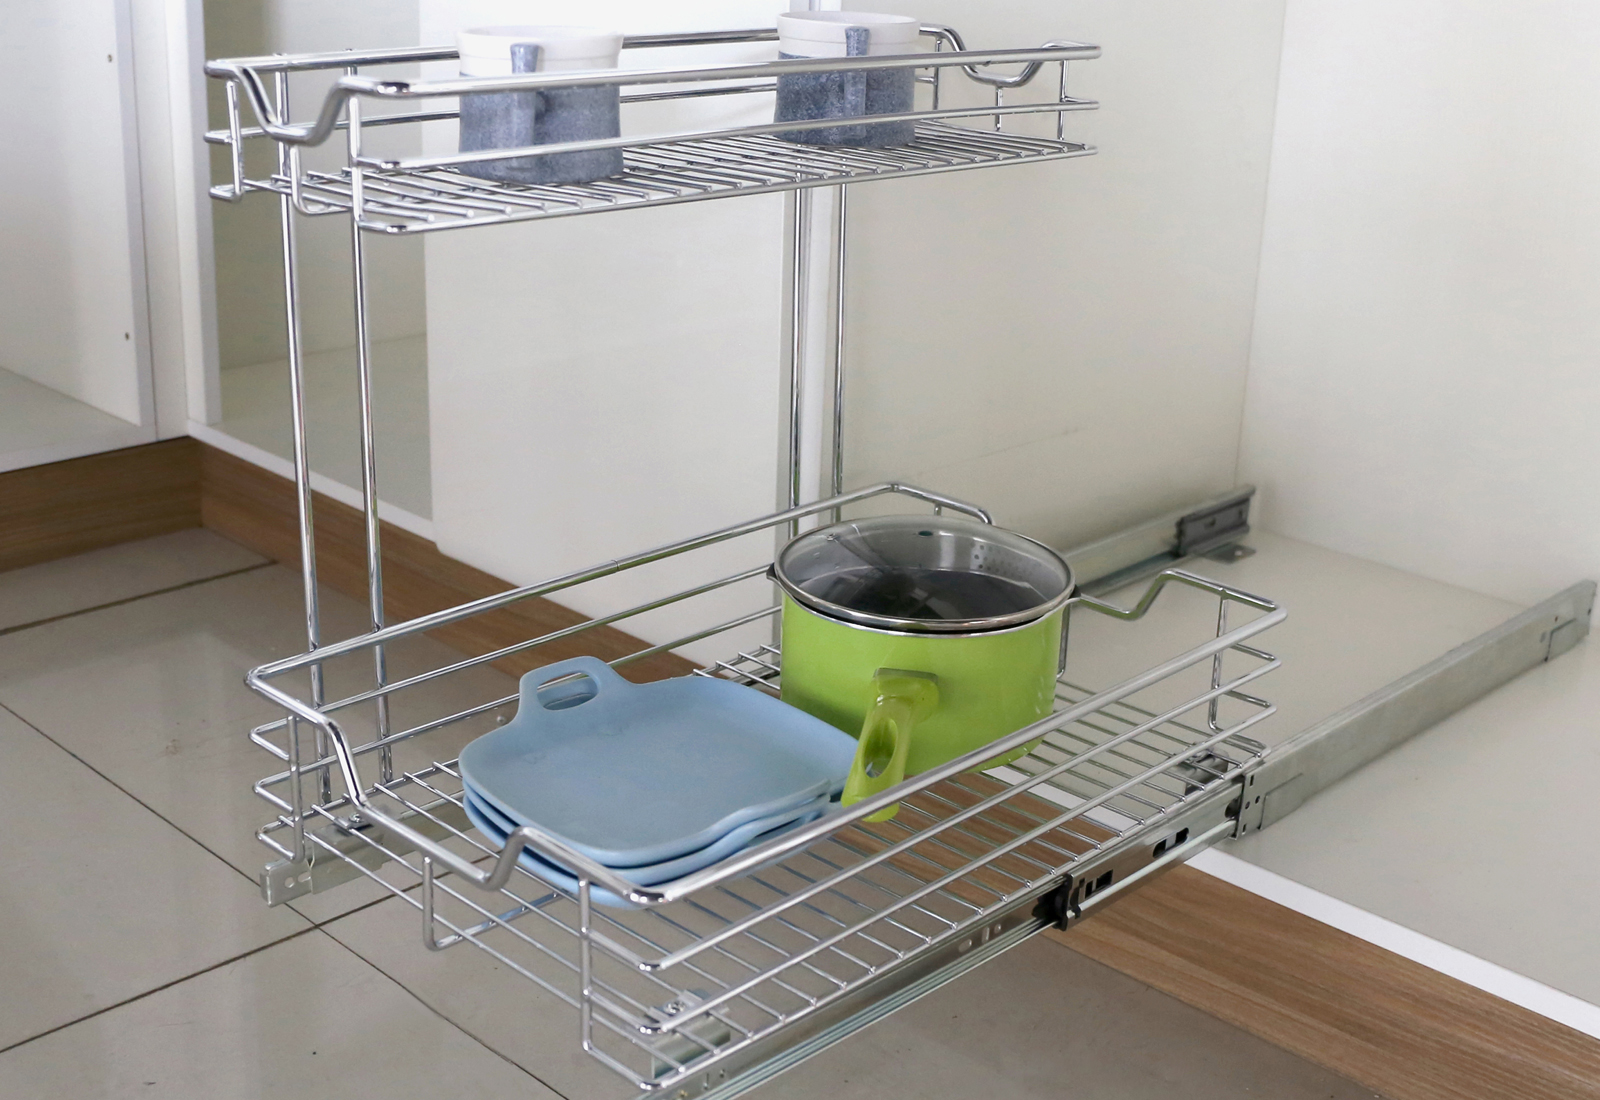 Soft-closing kitchen basket PTJ026G for cabinet